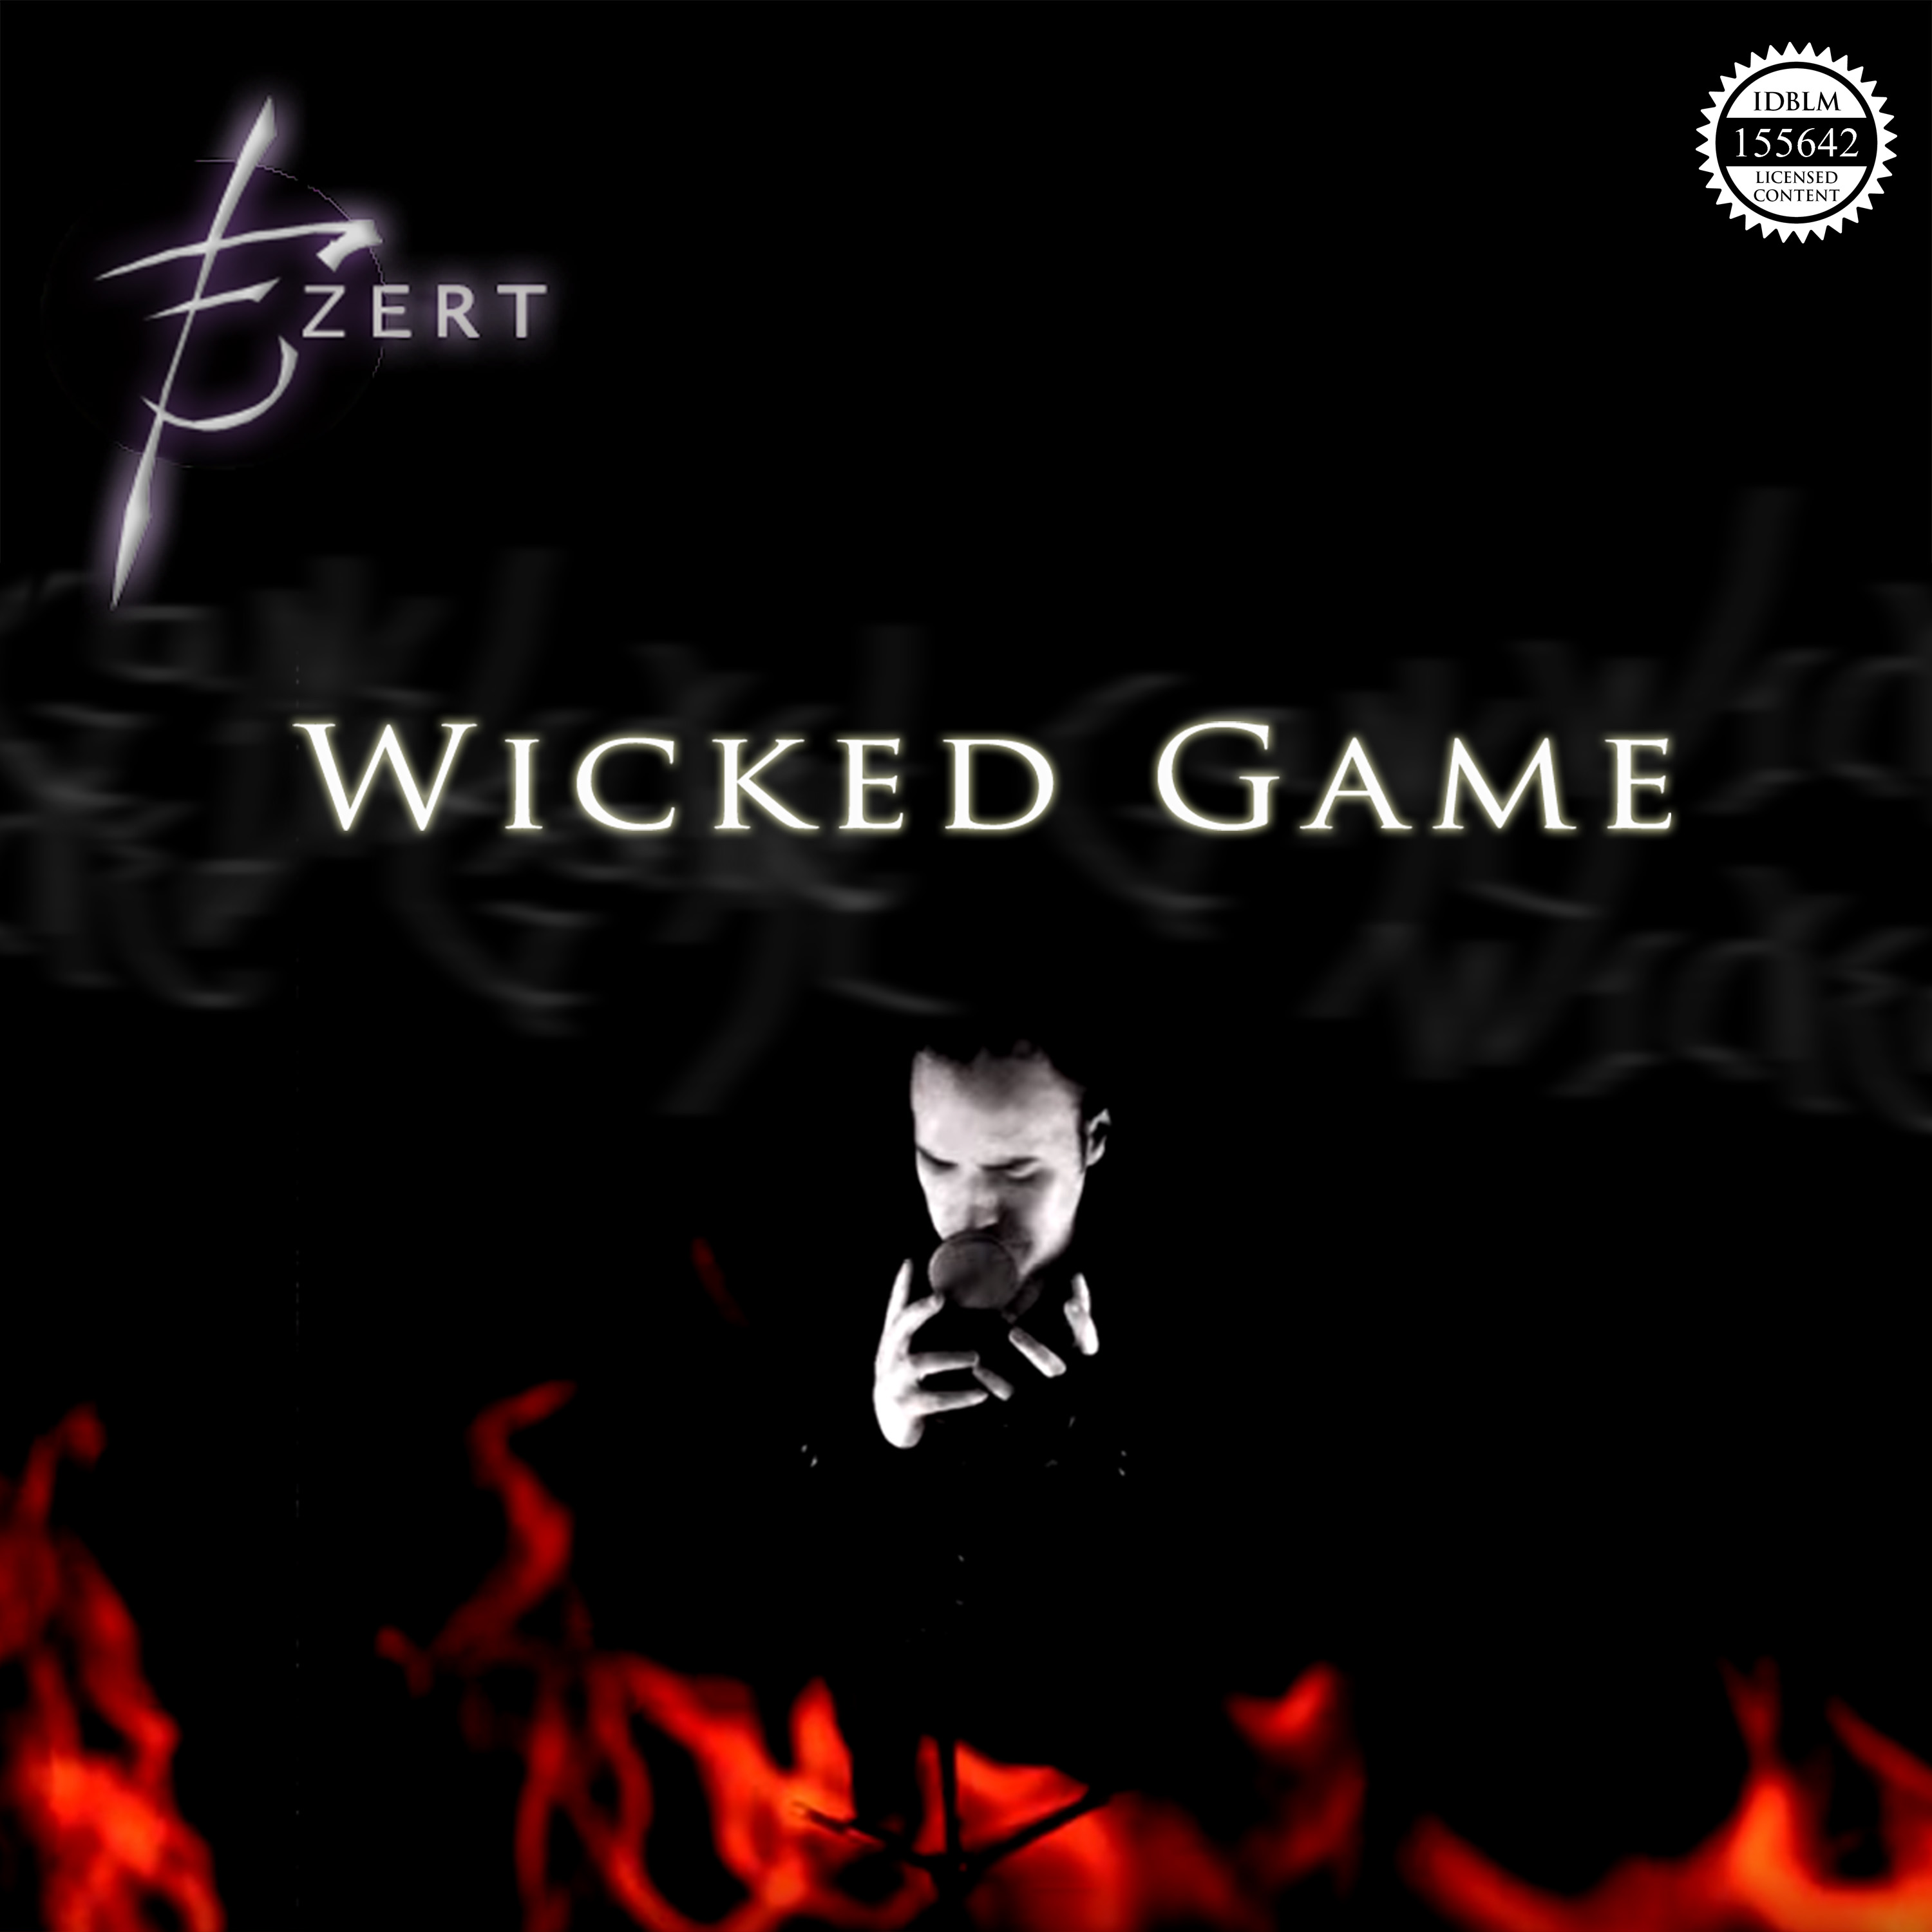 audio/Ezert/discography/releases/2019/STRANGE-02 - Wicked Game (Single)/STRANGE-01 - Ezert - Wicked Game (Single).jpg